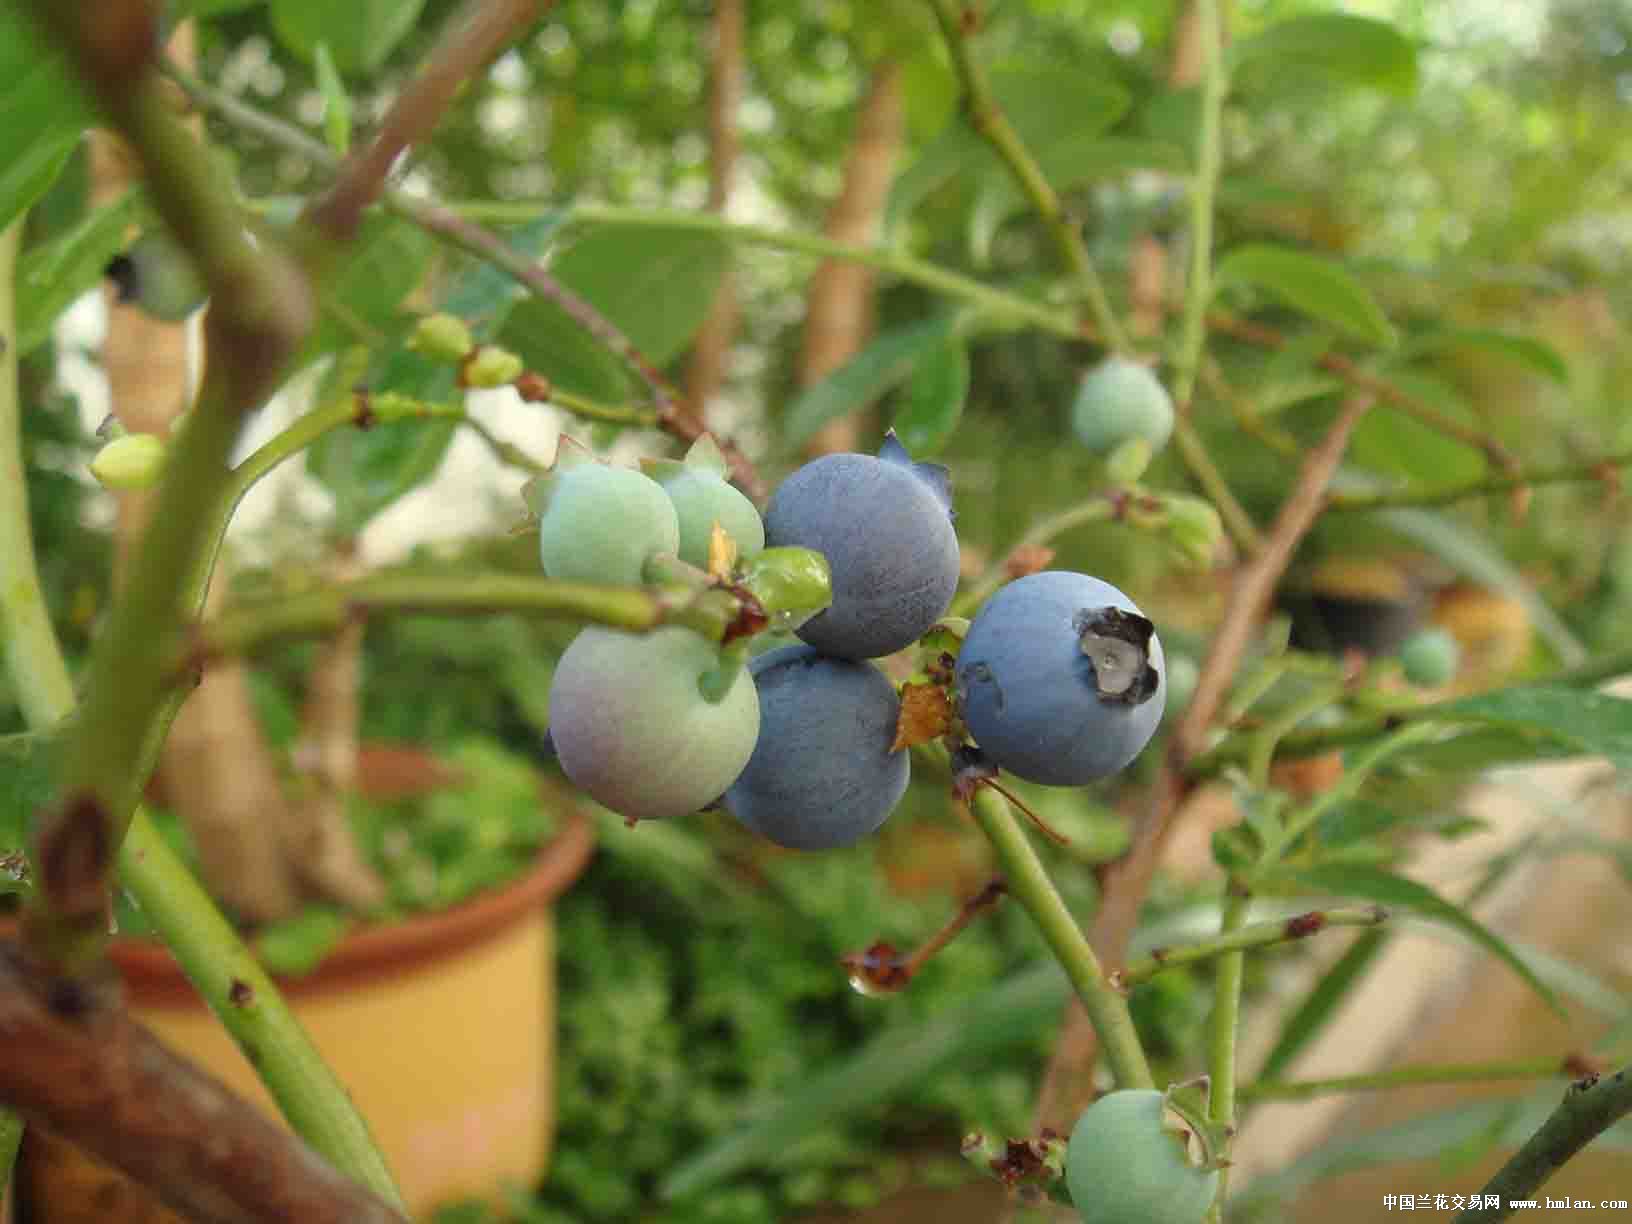 蓝莓开花了-茶余兰后-中国兰花交易网社区